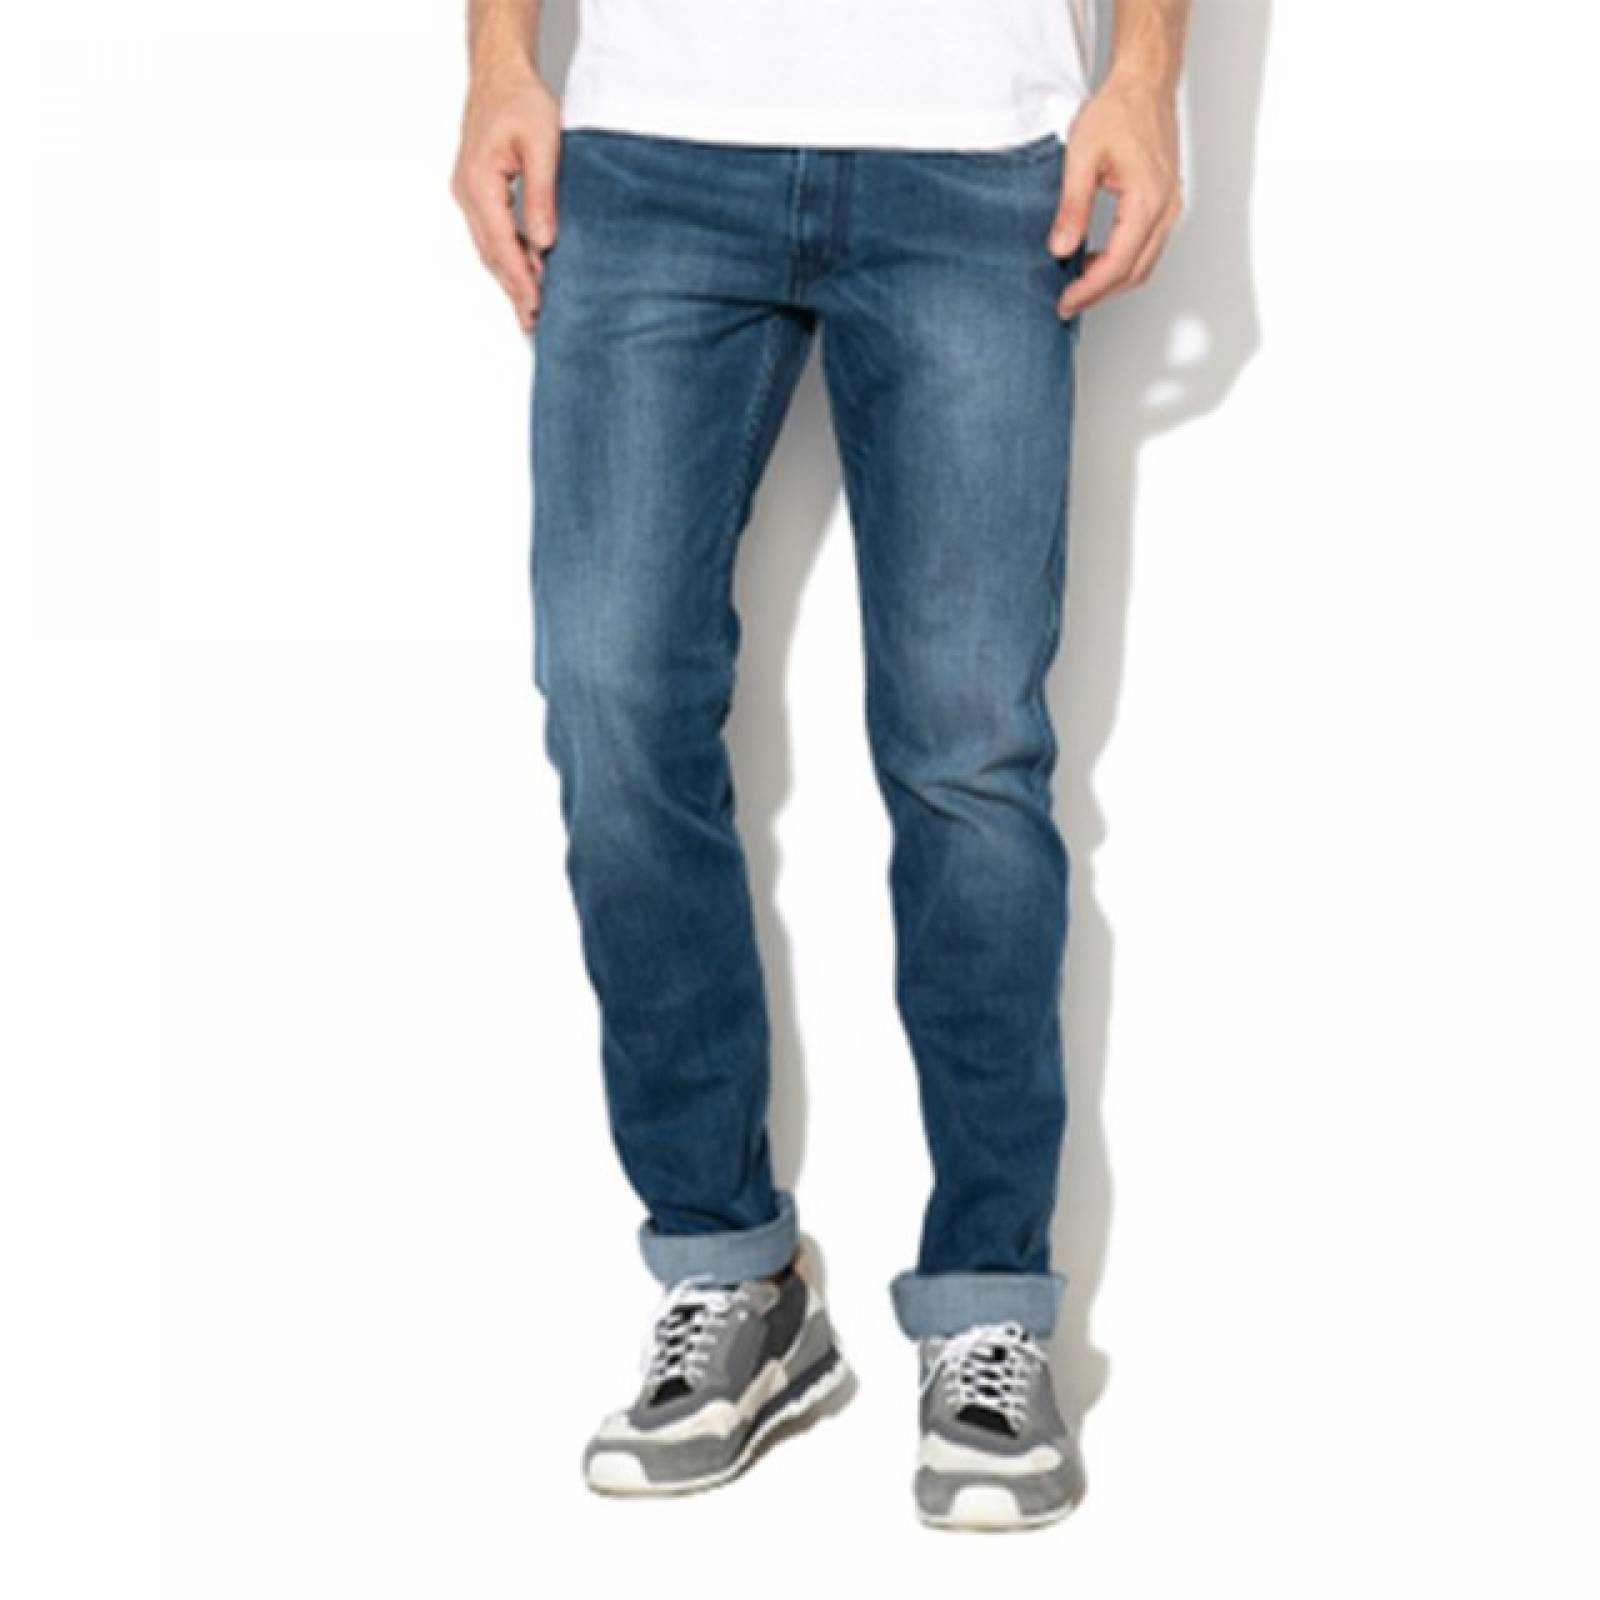 Jeans Levis 511 Slim Fit 045113572